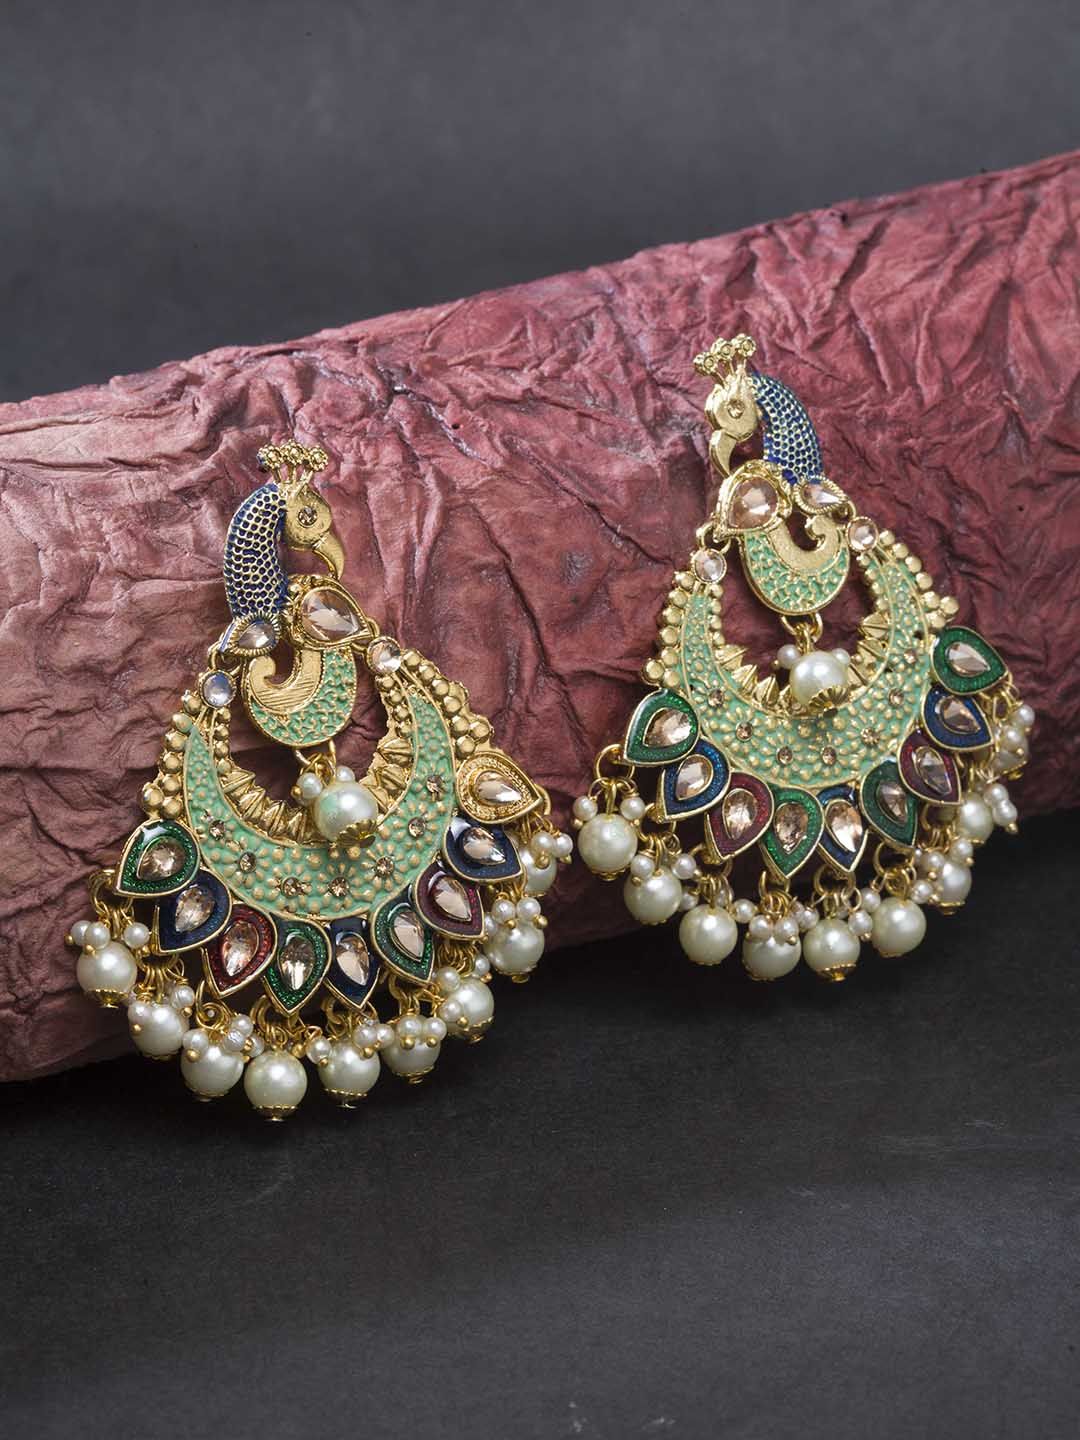 Priyaasi Green & Red Gold-Plated Kundan-Studded Meenakari Peacock Shaped Chandbalis Price in India